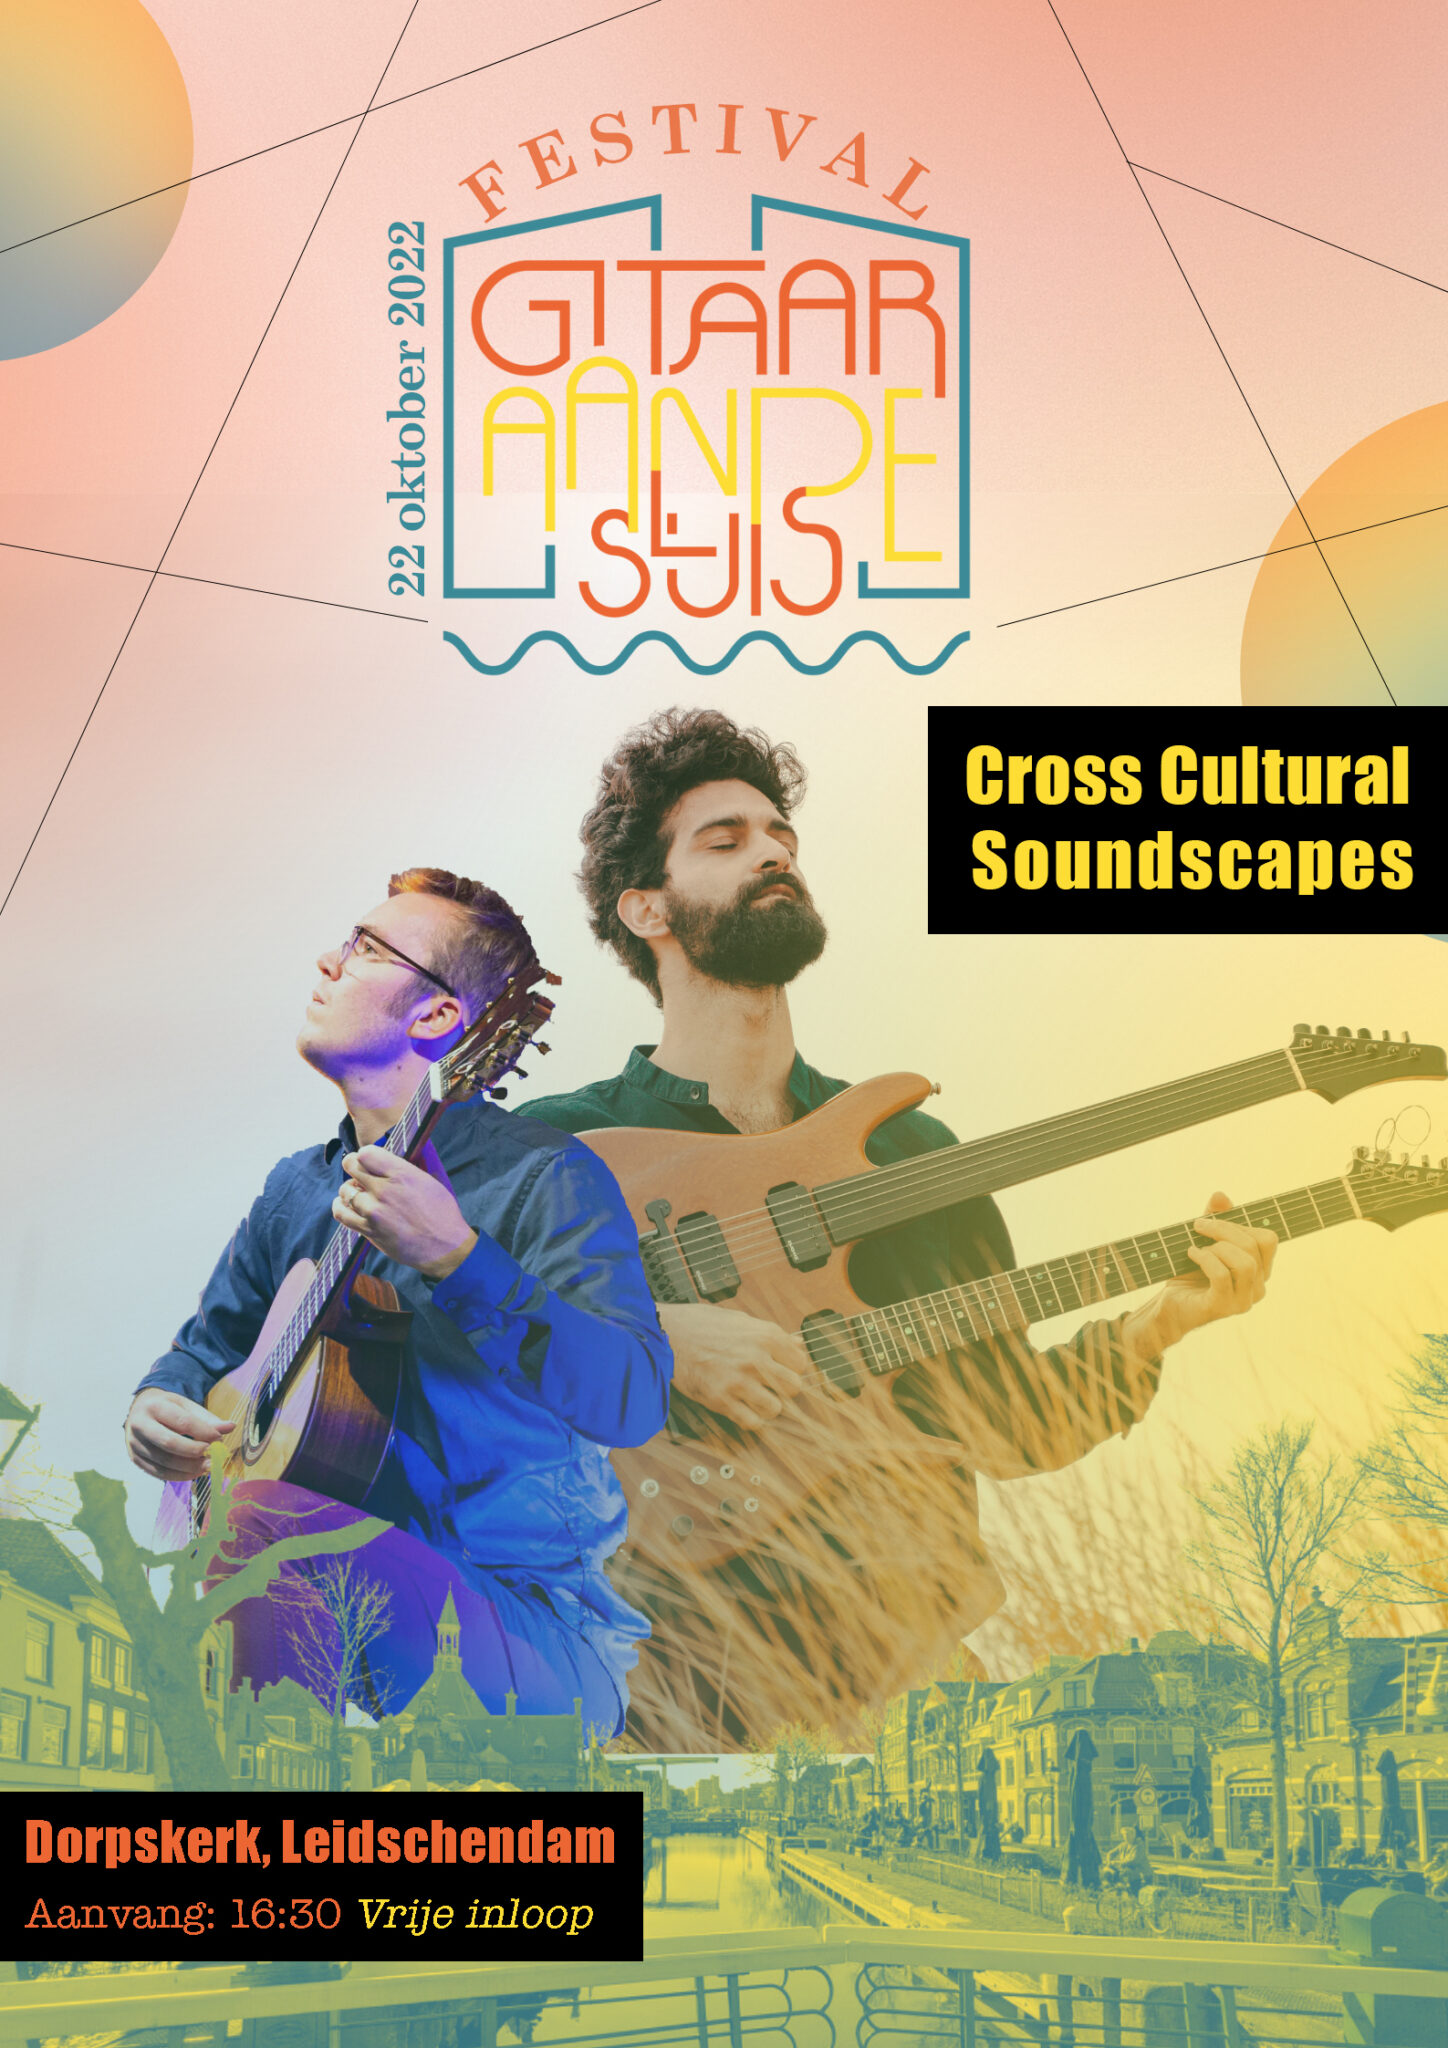 Cross Cultural Soundscapes @Gitaar aan de Sluis Festival @ Dorpskerk | Leidschendam | Zuid-Holland | Nederland